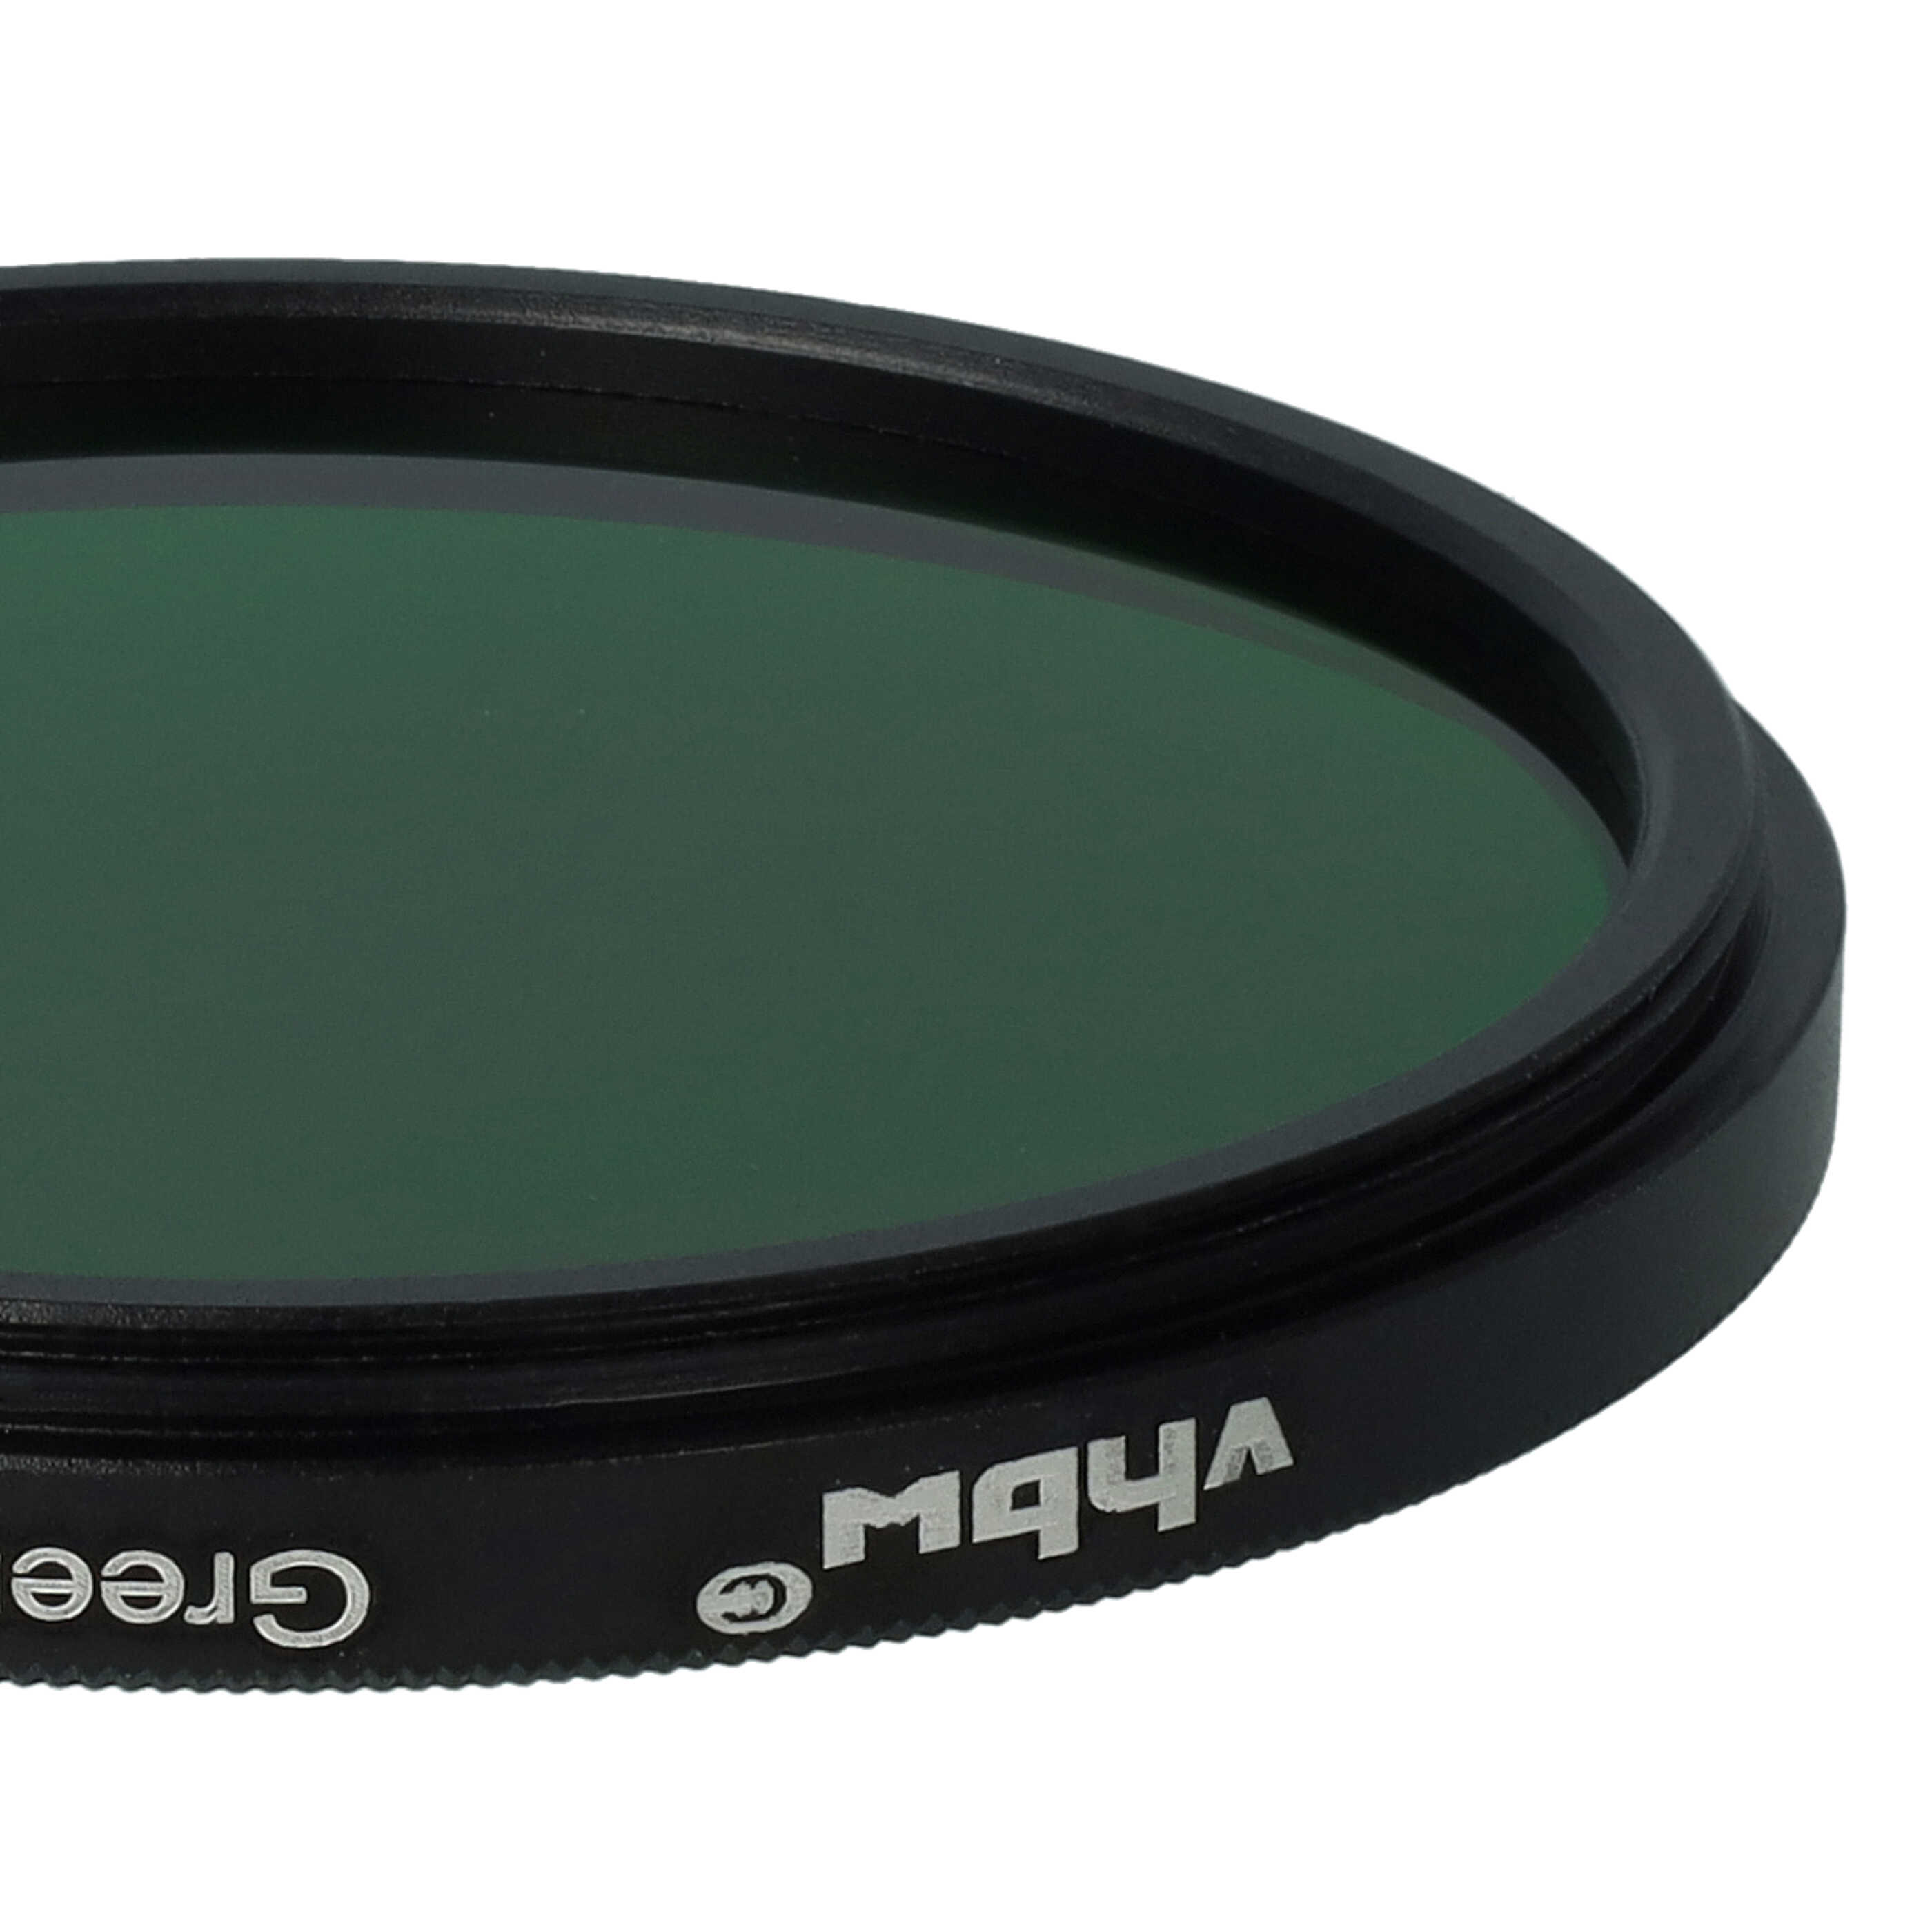 Filtro colorato per obiettivi fotocamera con filettatura da 52 mm - filtro verde